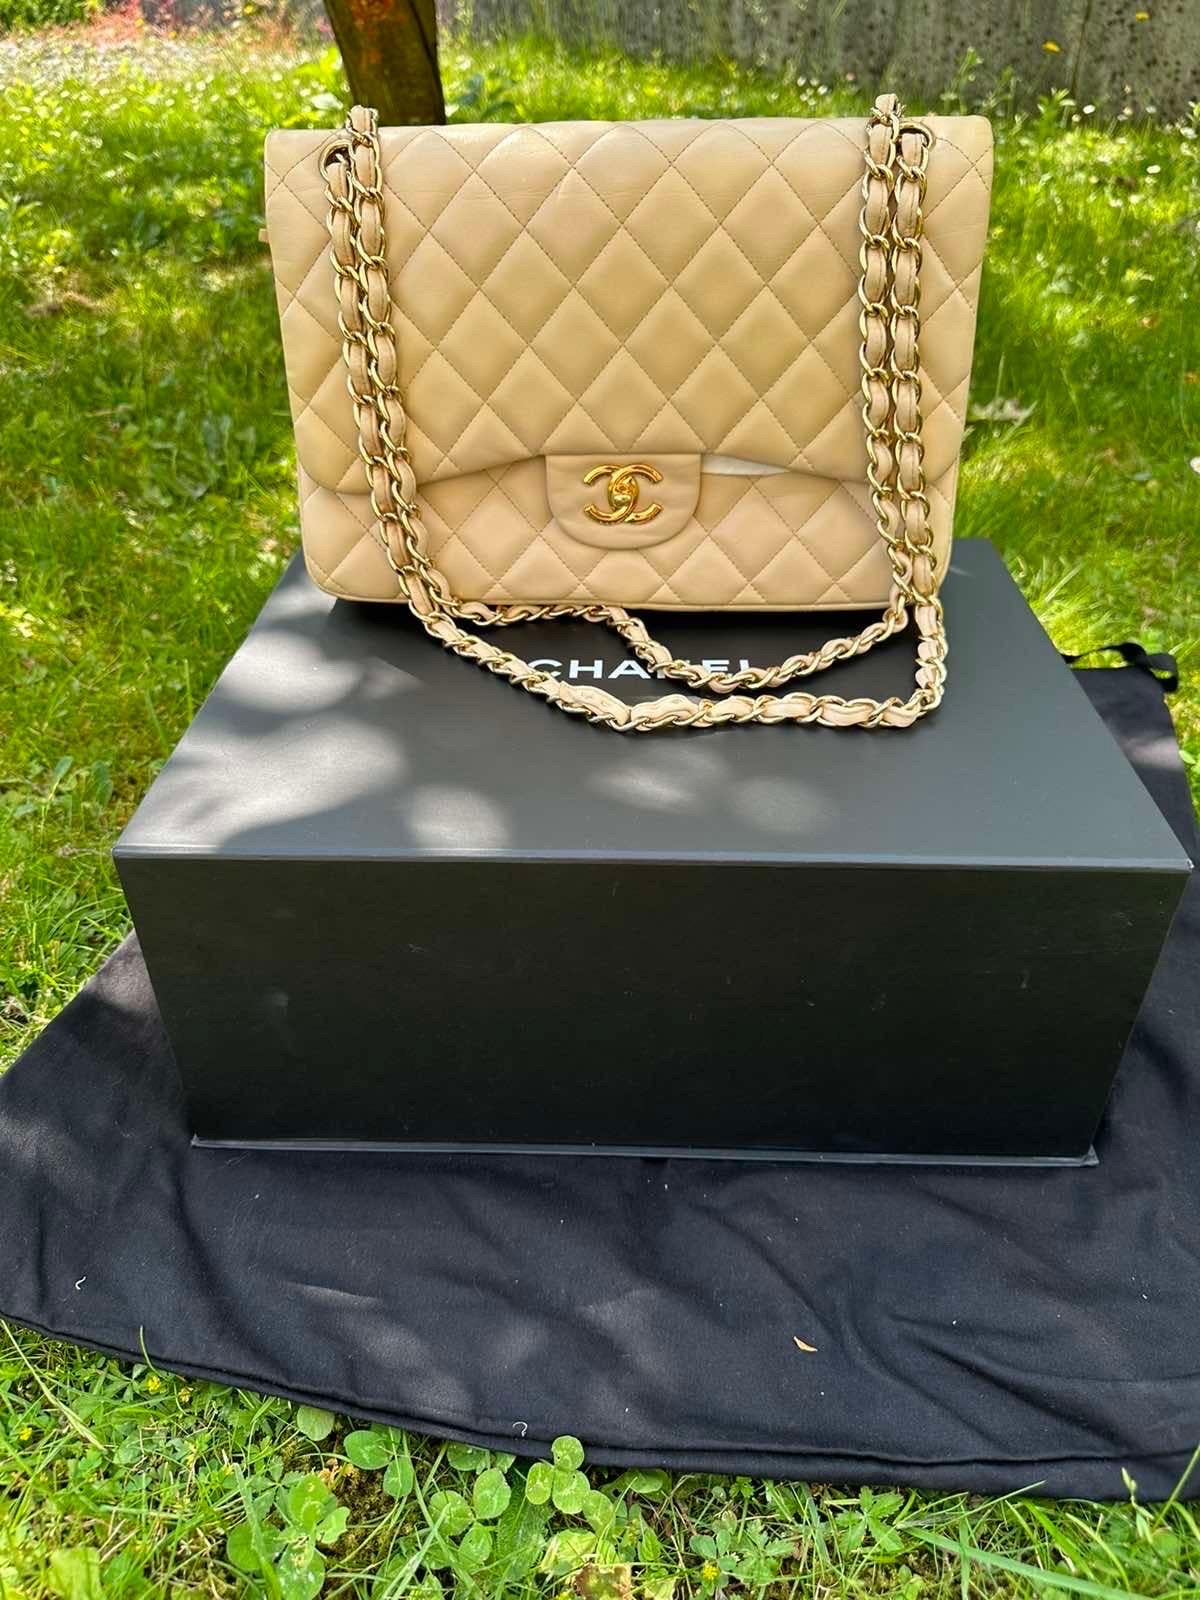 CHANEL Jumbo Beige Leather Maxi Bag 2